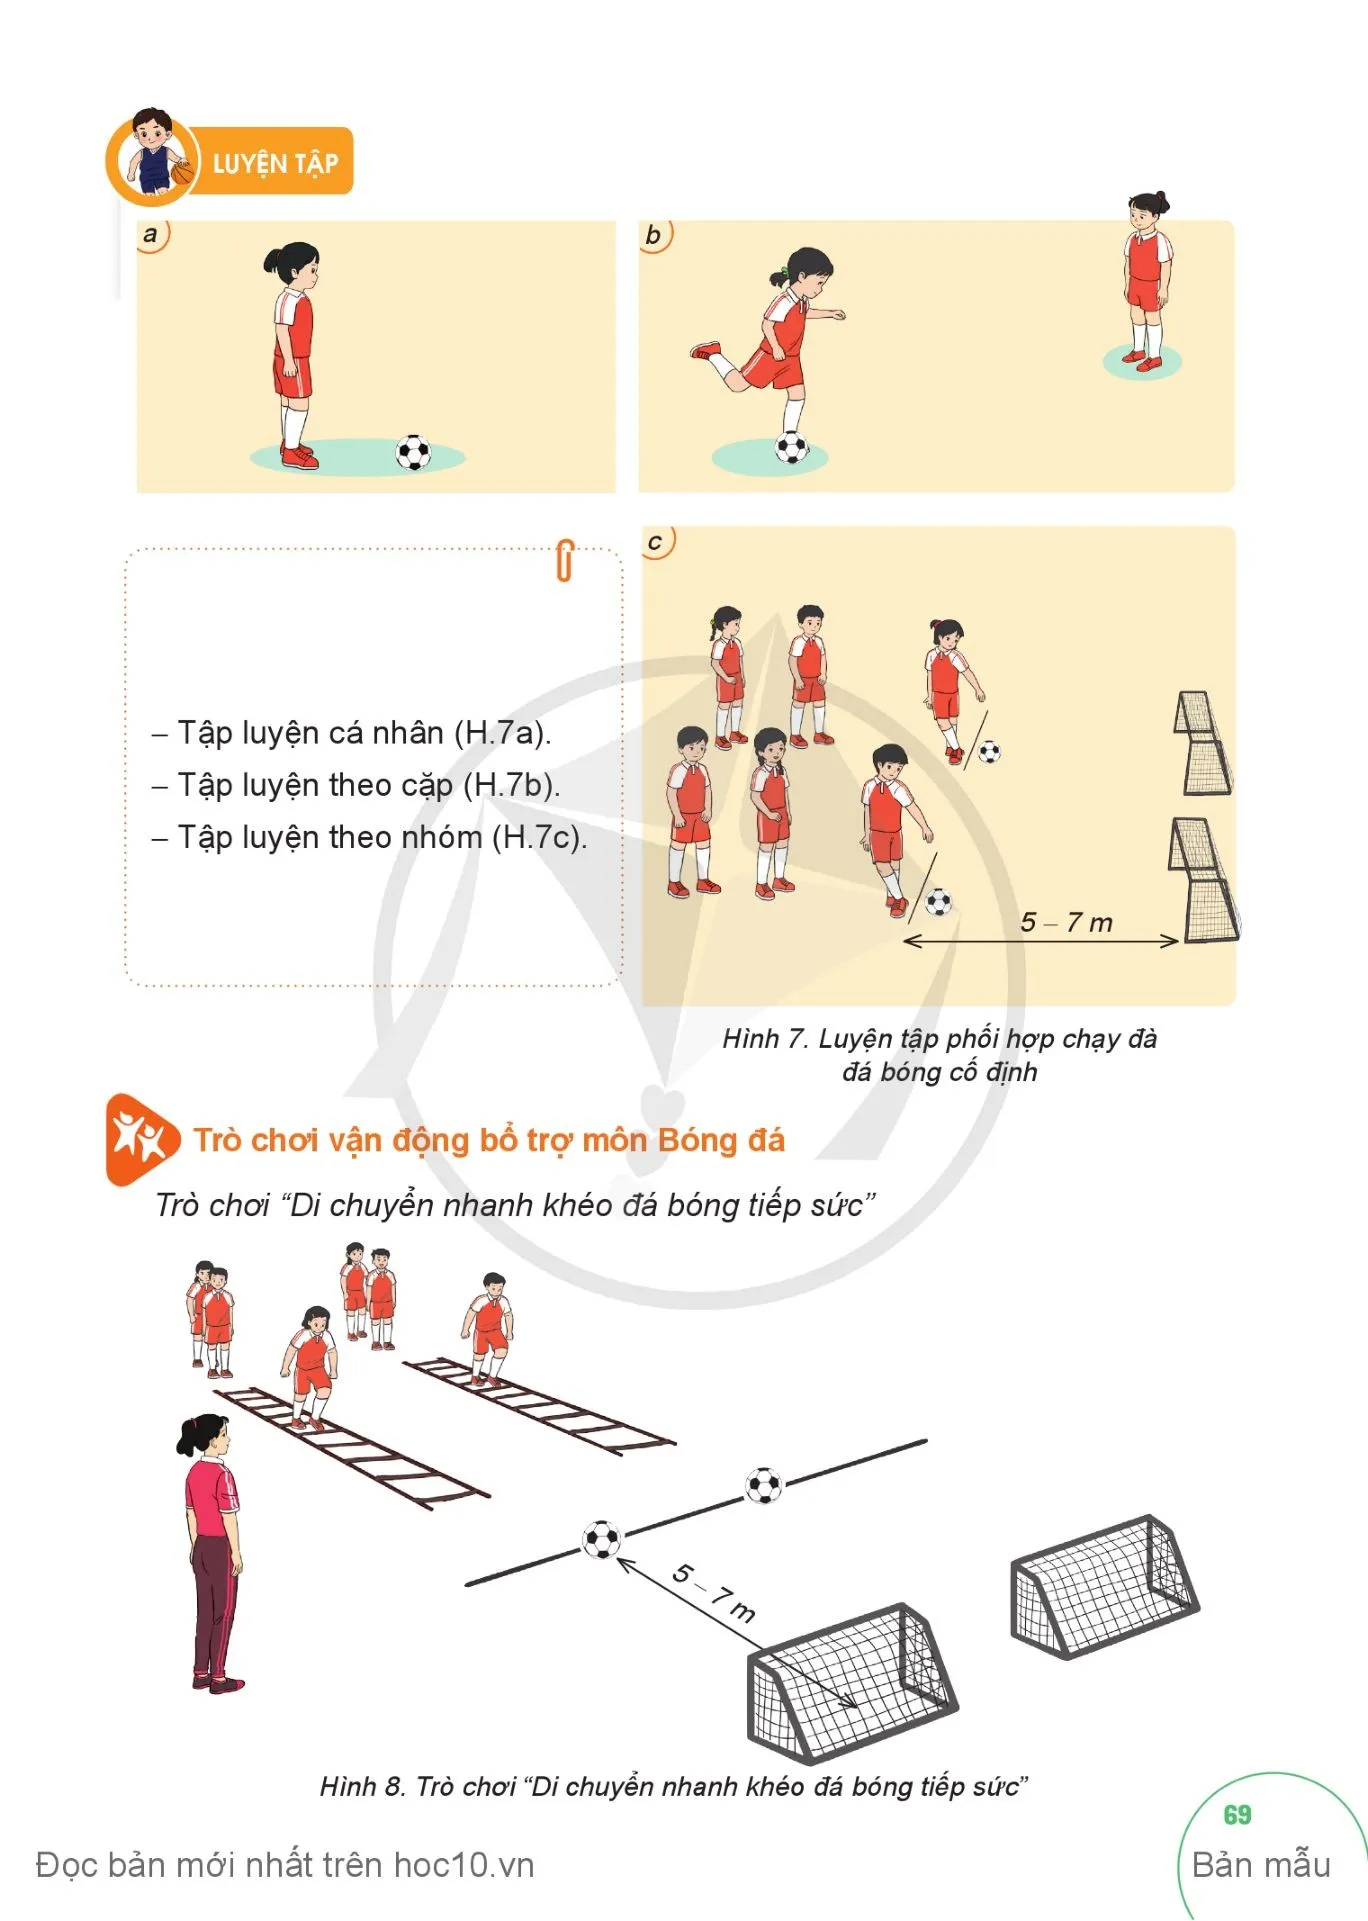 Bài 4. Phối hợp chạy đà đá bóng cố định